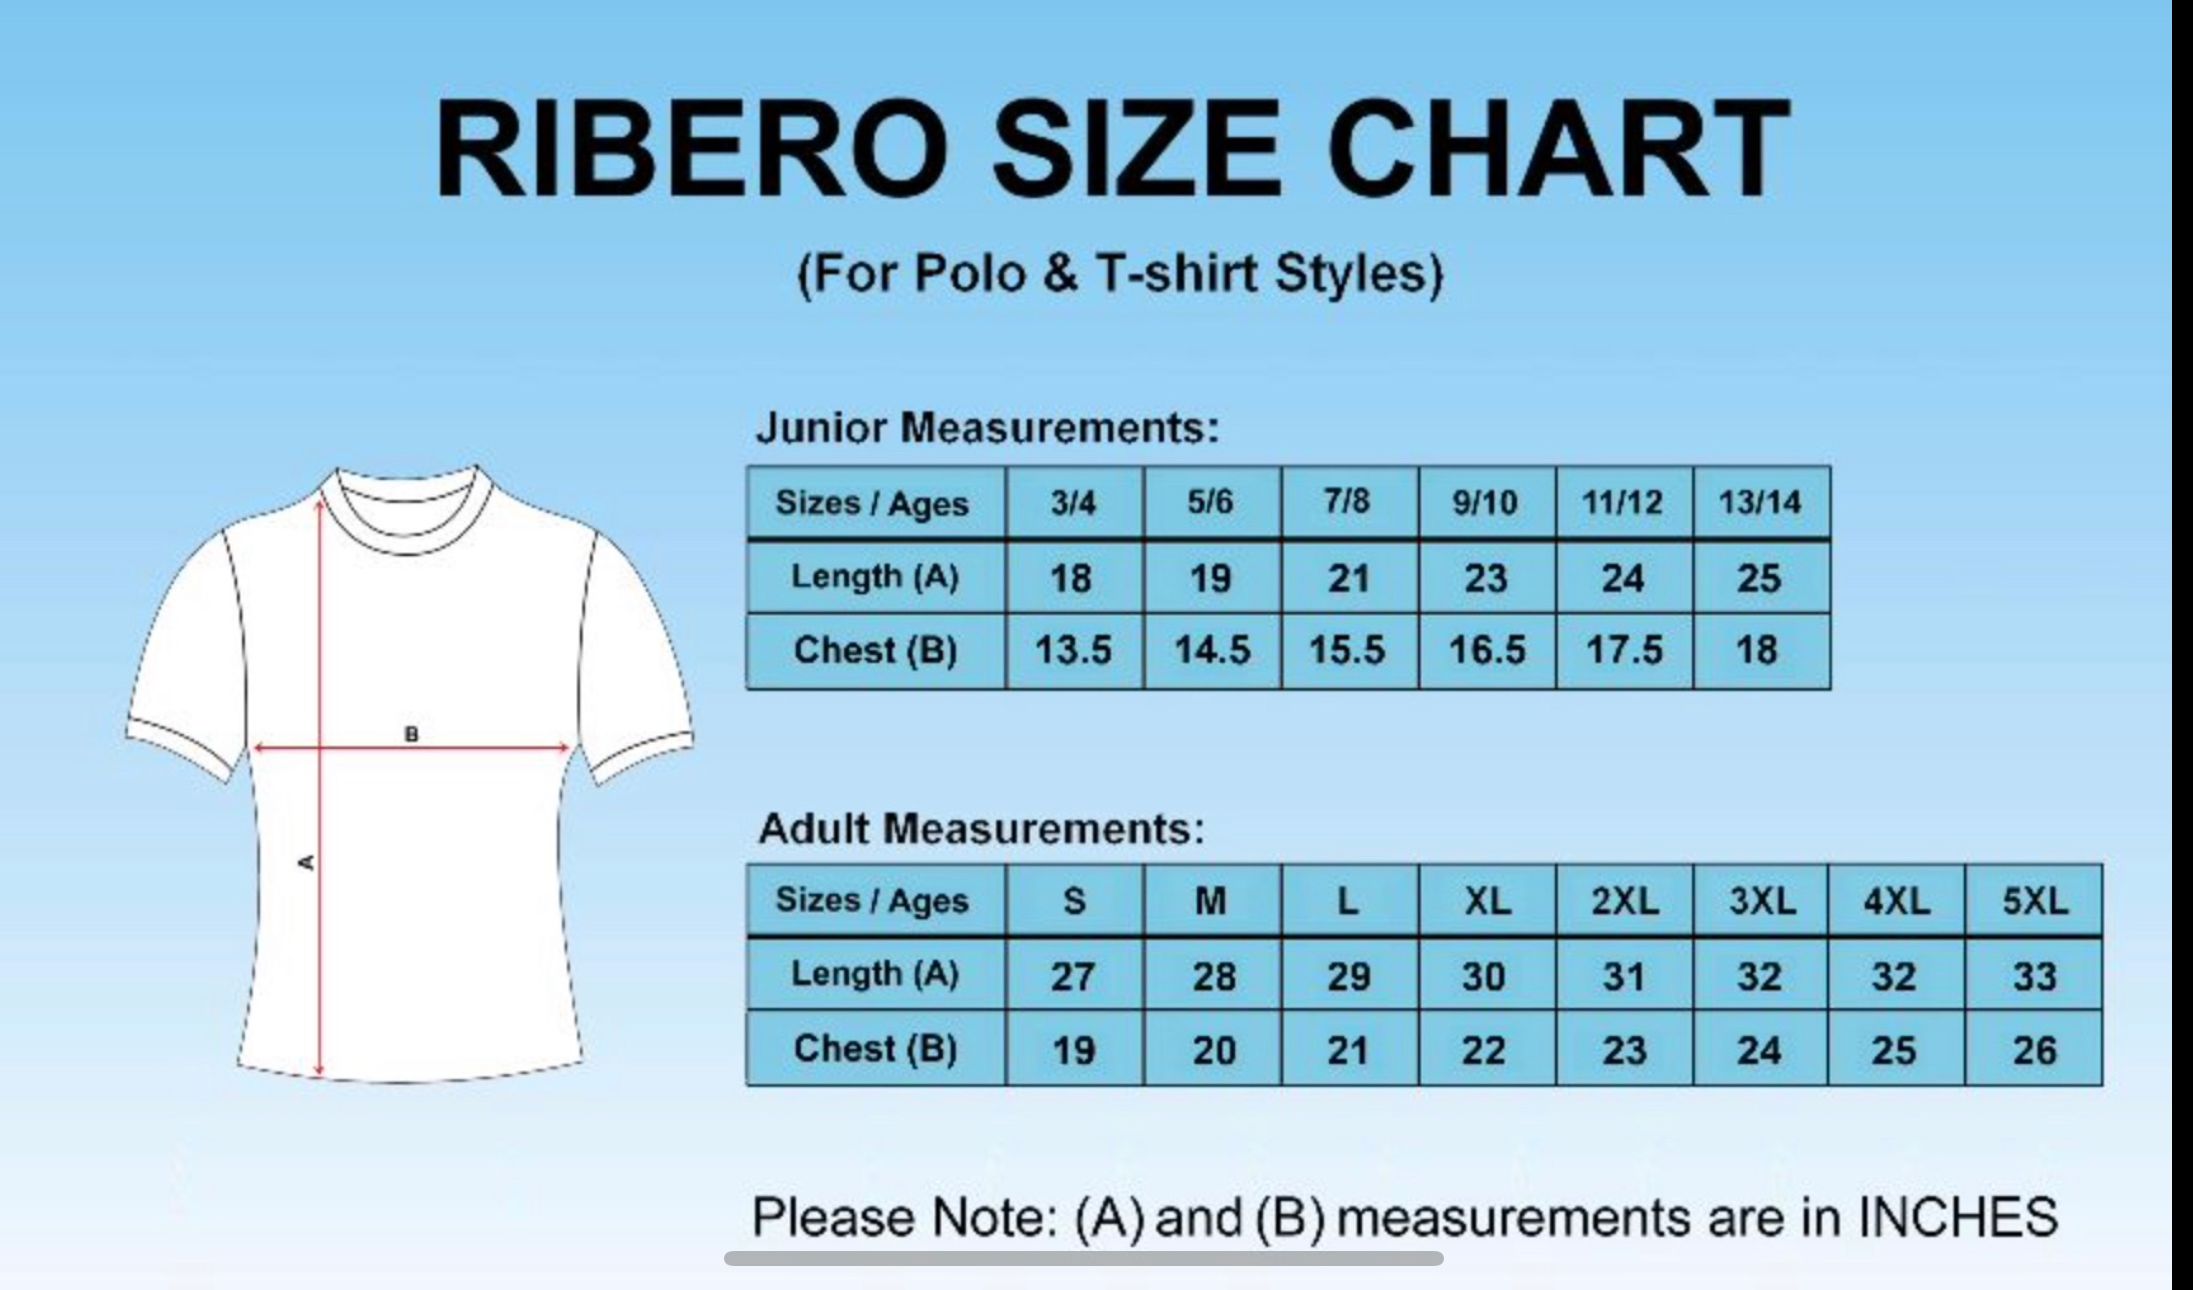 Ribero size chart